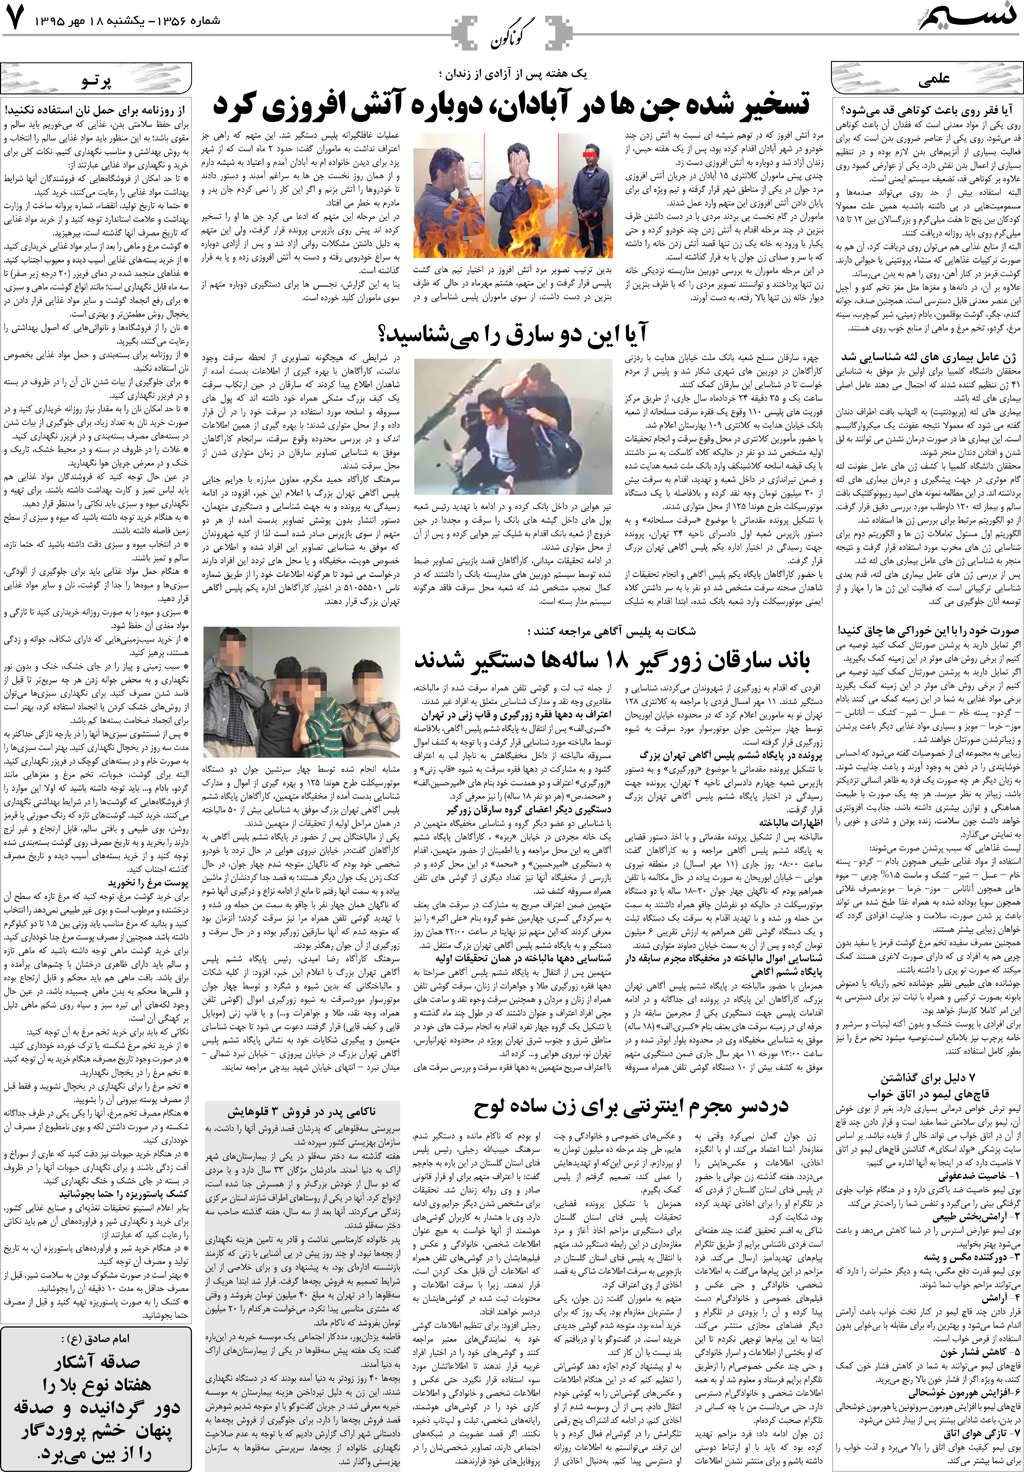 صفحه گوناگون روزنامه نسیم شماره 1356